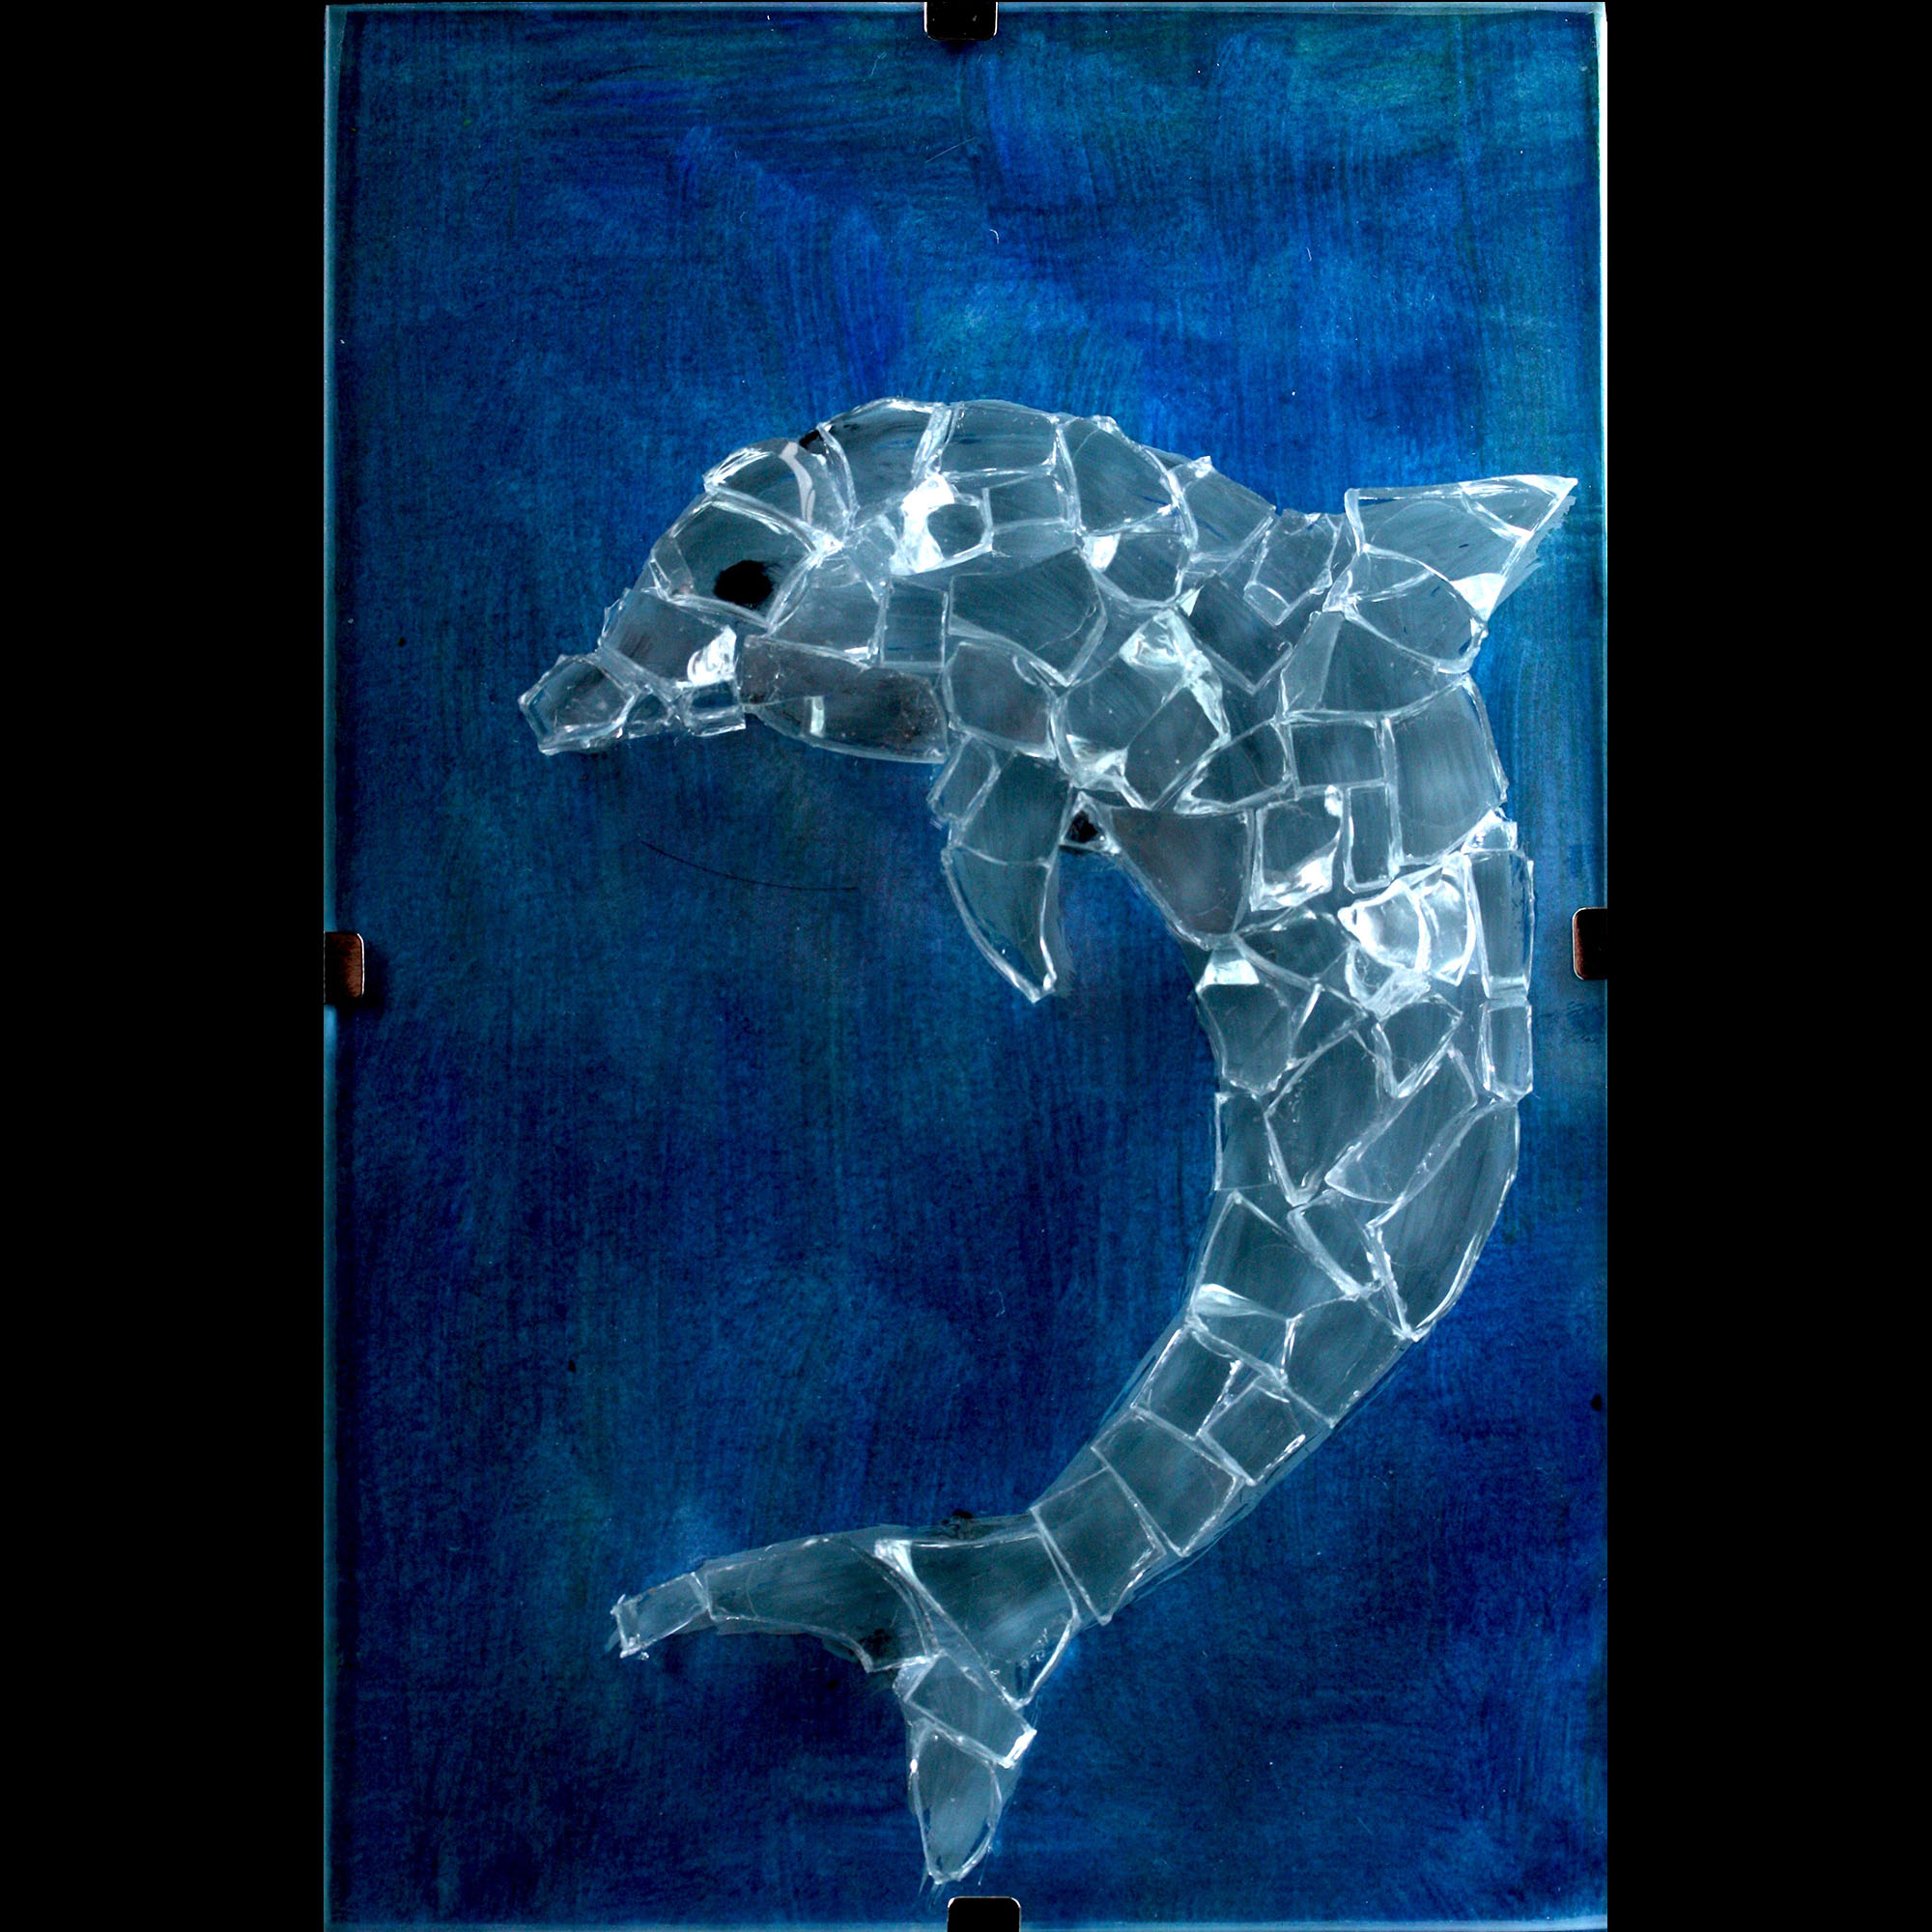 dolfijn glas kunst workshop glas verf galerie marielle braanker